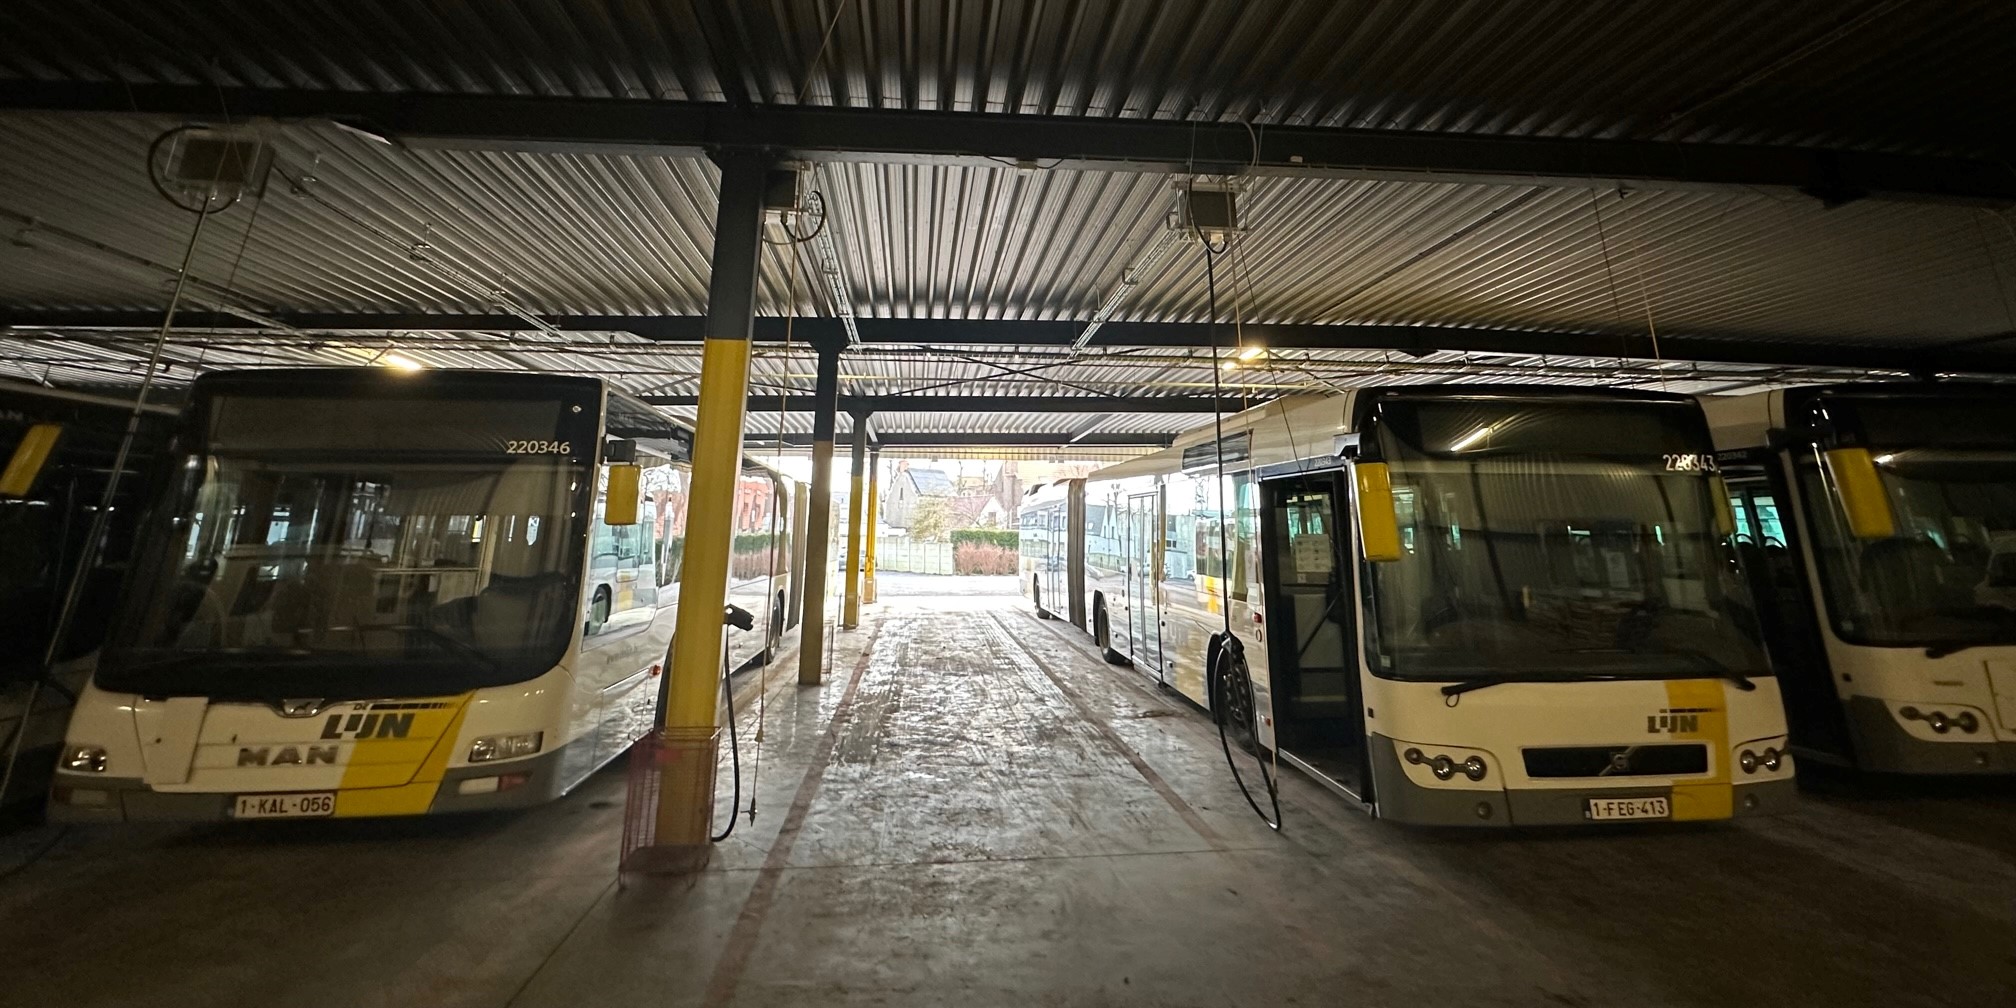 Bus depot De Lijn Vanhoorebeke / Coachpartners  te Maldegem 600kW DC charging Kempower.